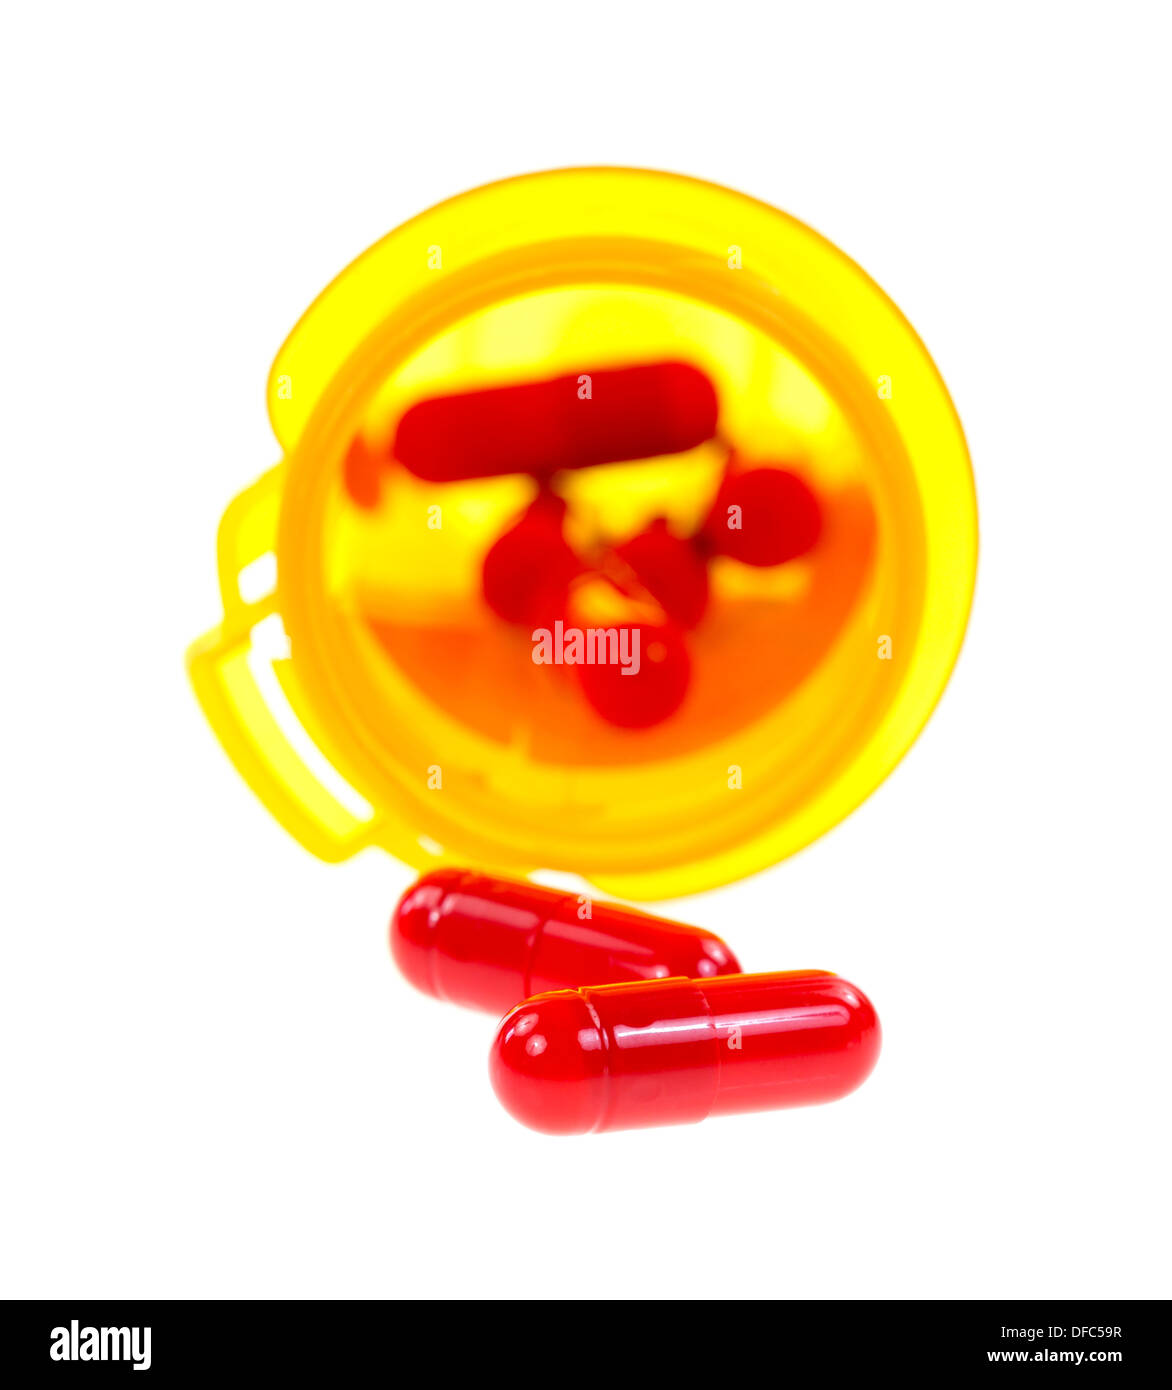 Zwei Antibiotika-Kapseln vor einem gelben Medizinfläschchen mit dem Rest der Dosierung in der Flasche. Stockfoto